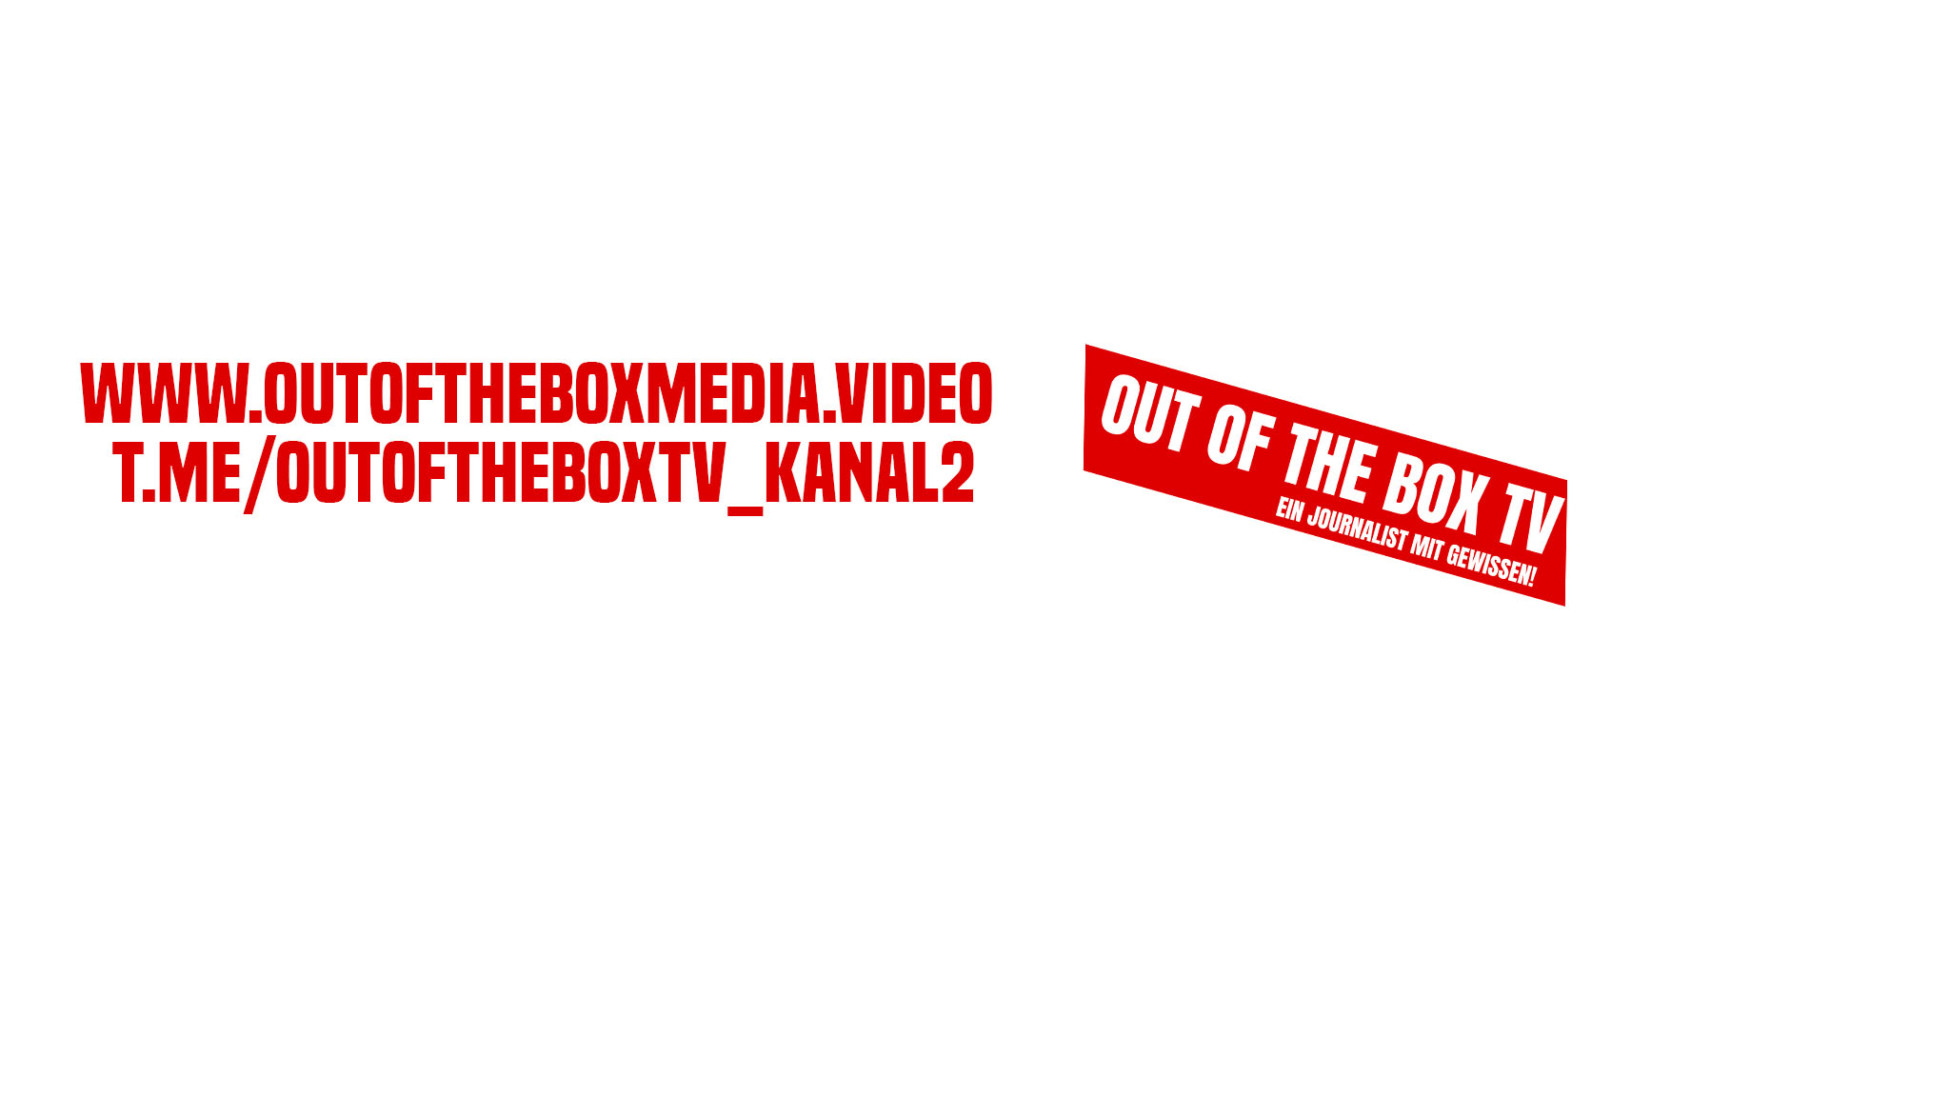 Out of the Box Media – Ein Journalist mit Gewissen!